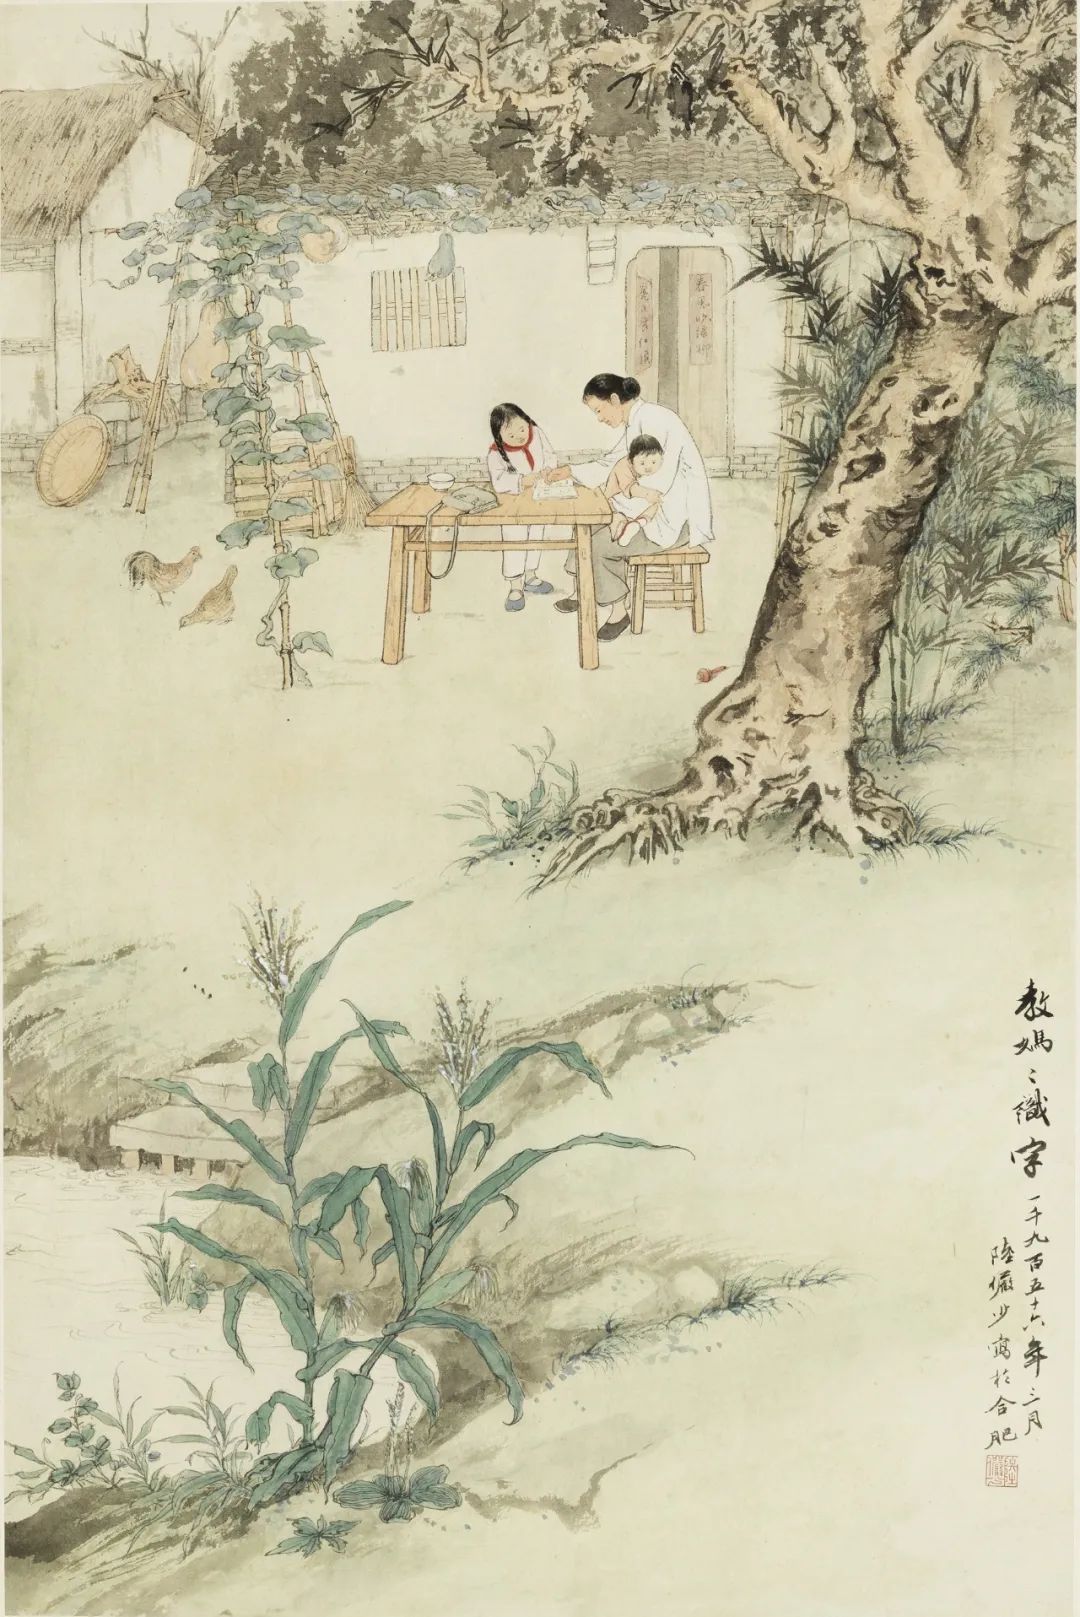 陆俨少 《教妈妈识字》 纸本设色 中国画 78.6cm×52.1cm 1956年 中国美术馆藏